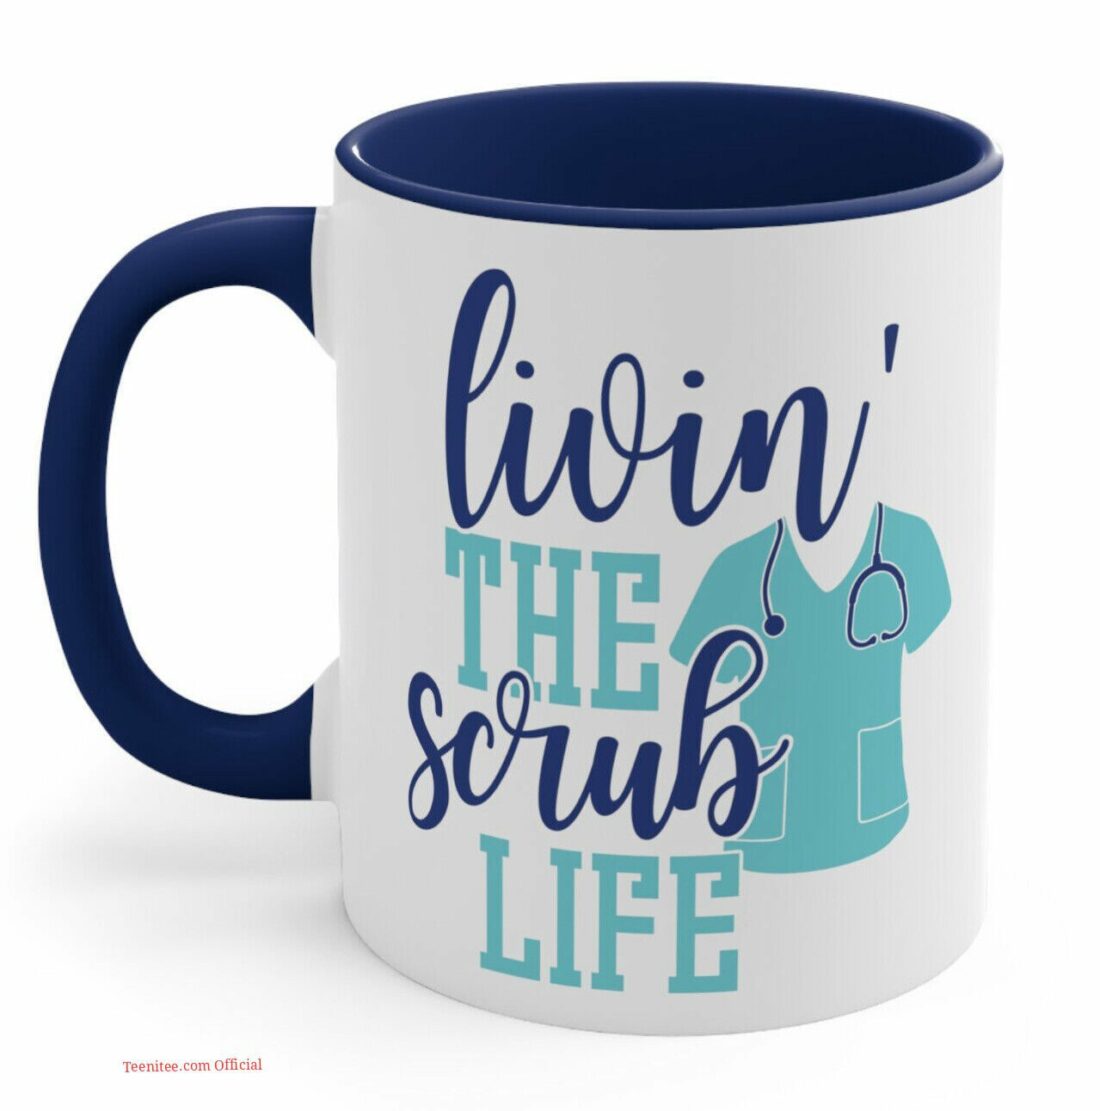 Livin the scrub life| lovely mug gift for nurse - 11oz